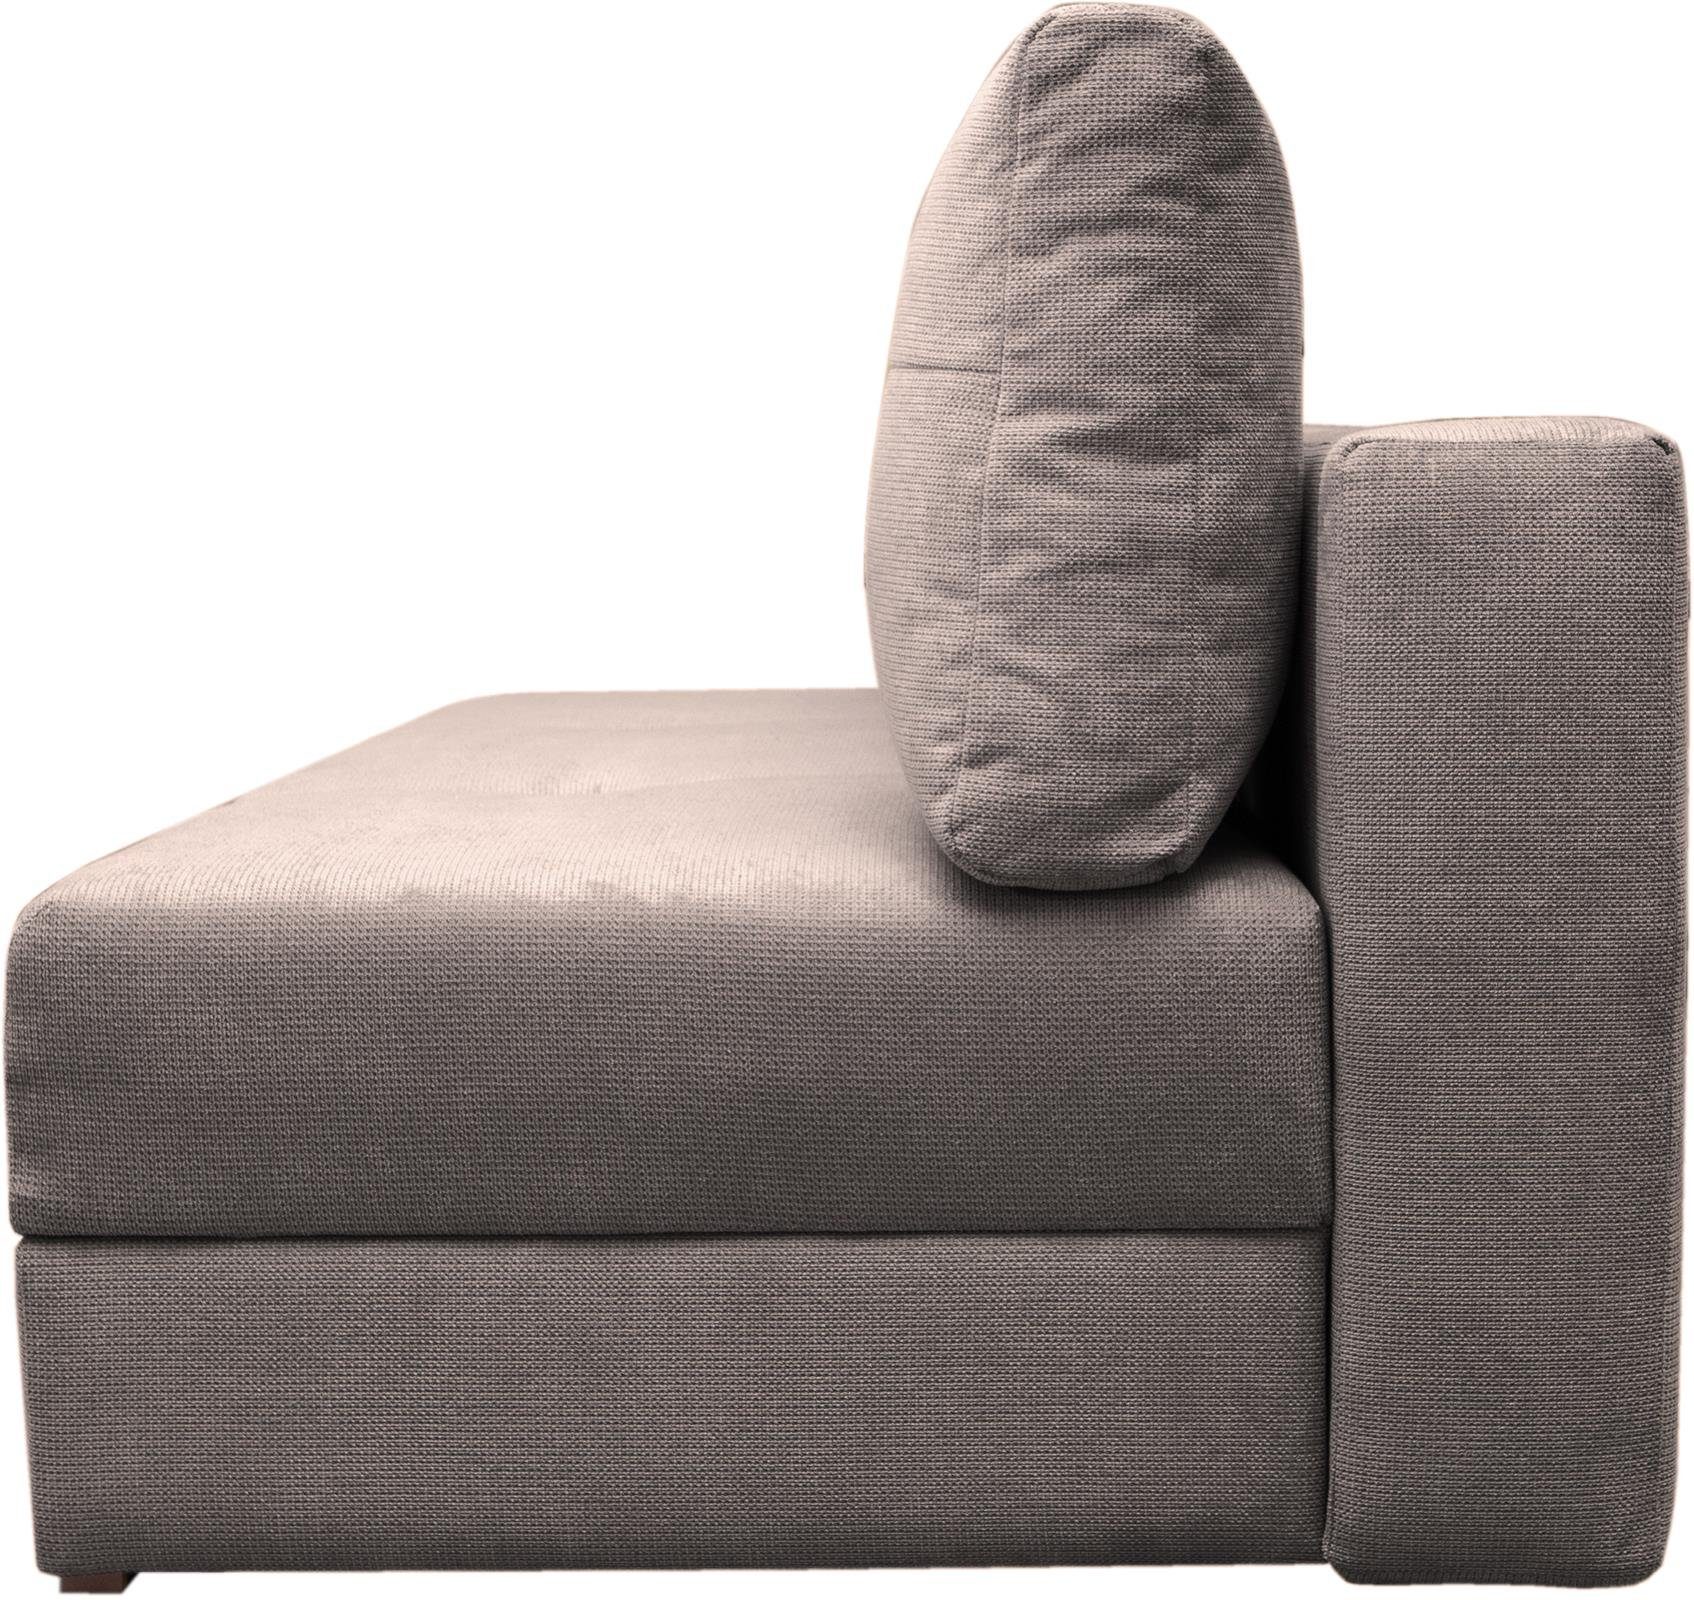 Schlaffunktion, 3-Sitzer Sofa Schlafsofa, mit Beautysofa Bettkasten, braun Dafne, Couch,